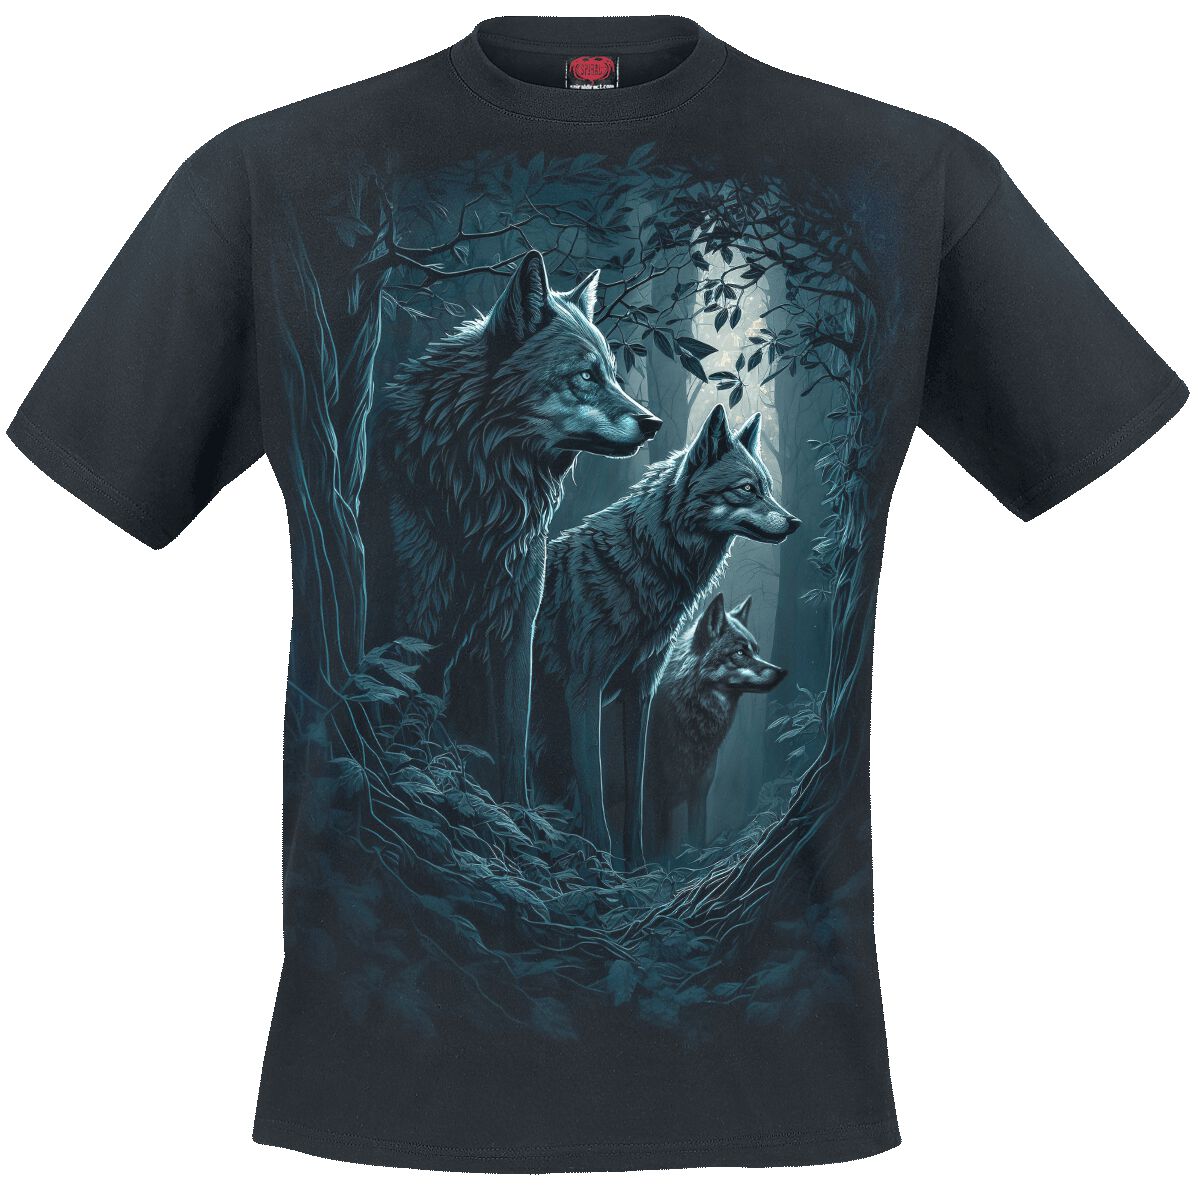 Spiral T-Shirt - Forest Guardians - S bis 4XL - für Männer - Größe L - schwarz